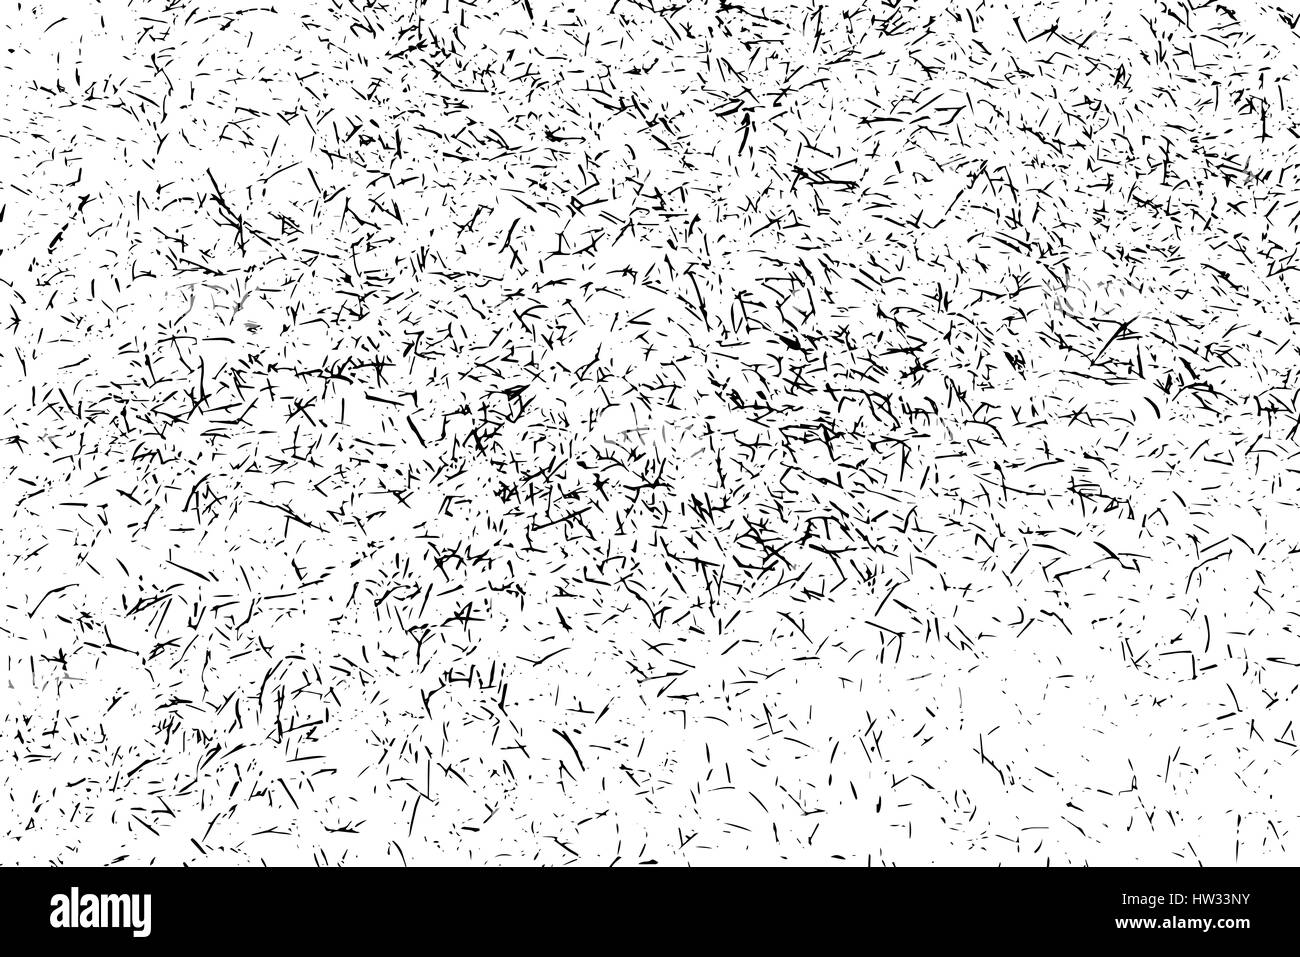 Grunge background texture isolées, old style noir et blanc pour l'effet de superposition des ressources ou sale détail. Vecteur EPS10. Illustration de Vecteur